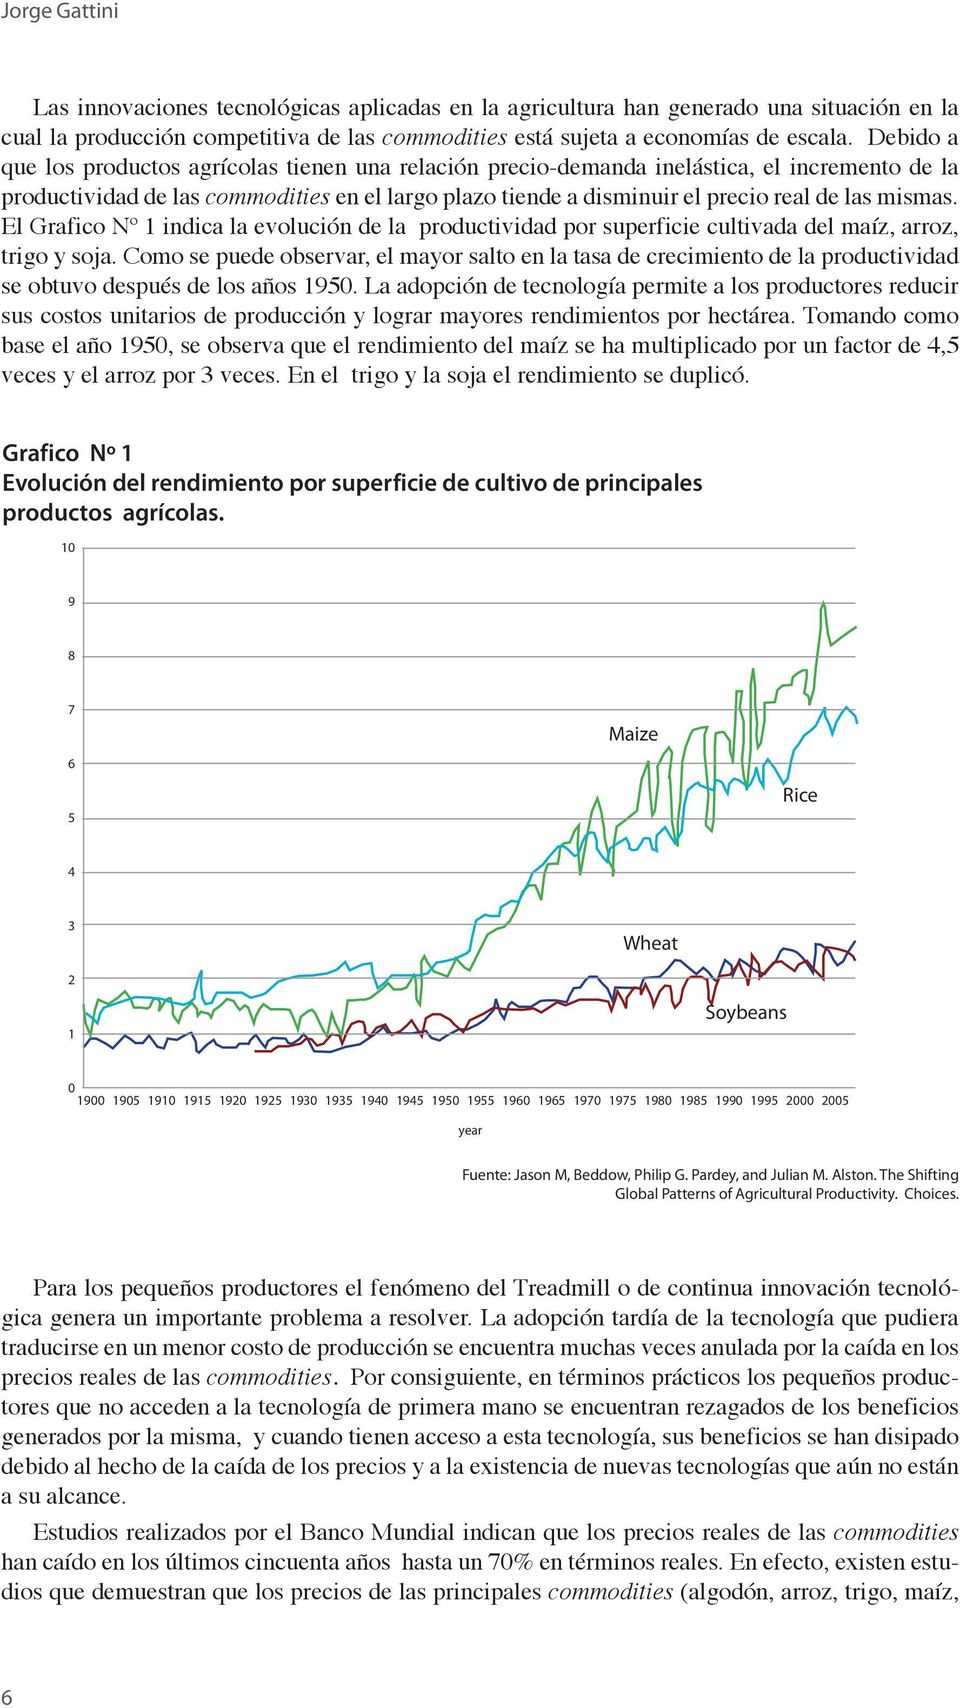 mismas. El Grafico Nº 1 indica la evolución de la productividad por superficie cultivada del maíz, arroz, trigo y soja.